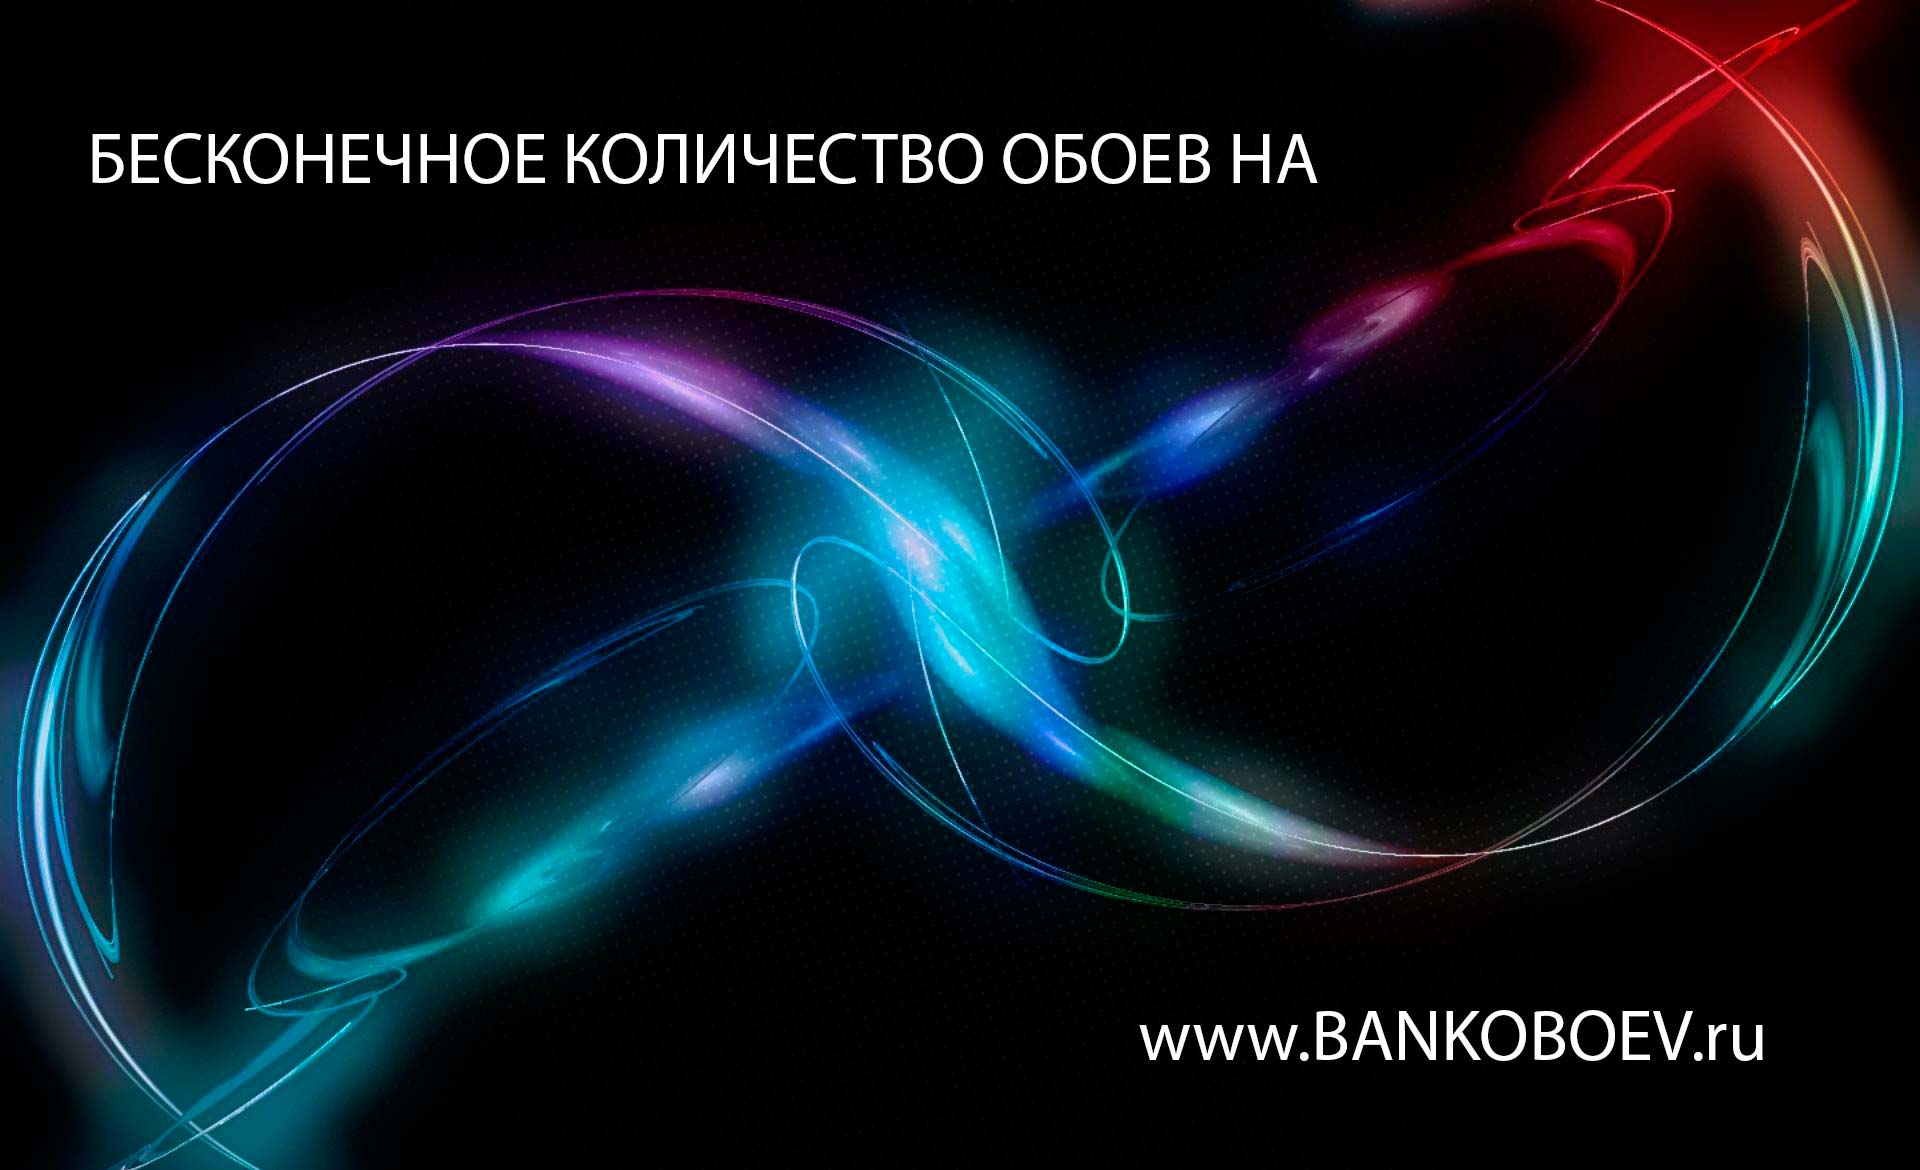 Bankoboev Ru Image Mtq2nzy4 Jpg